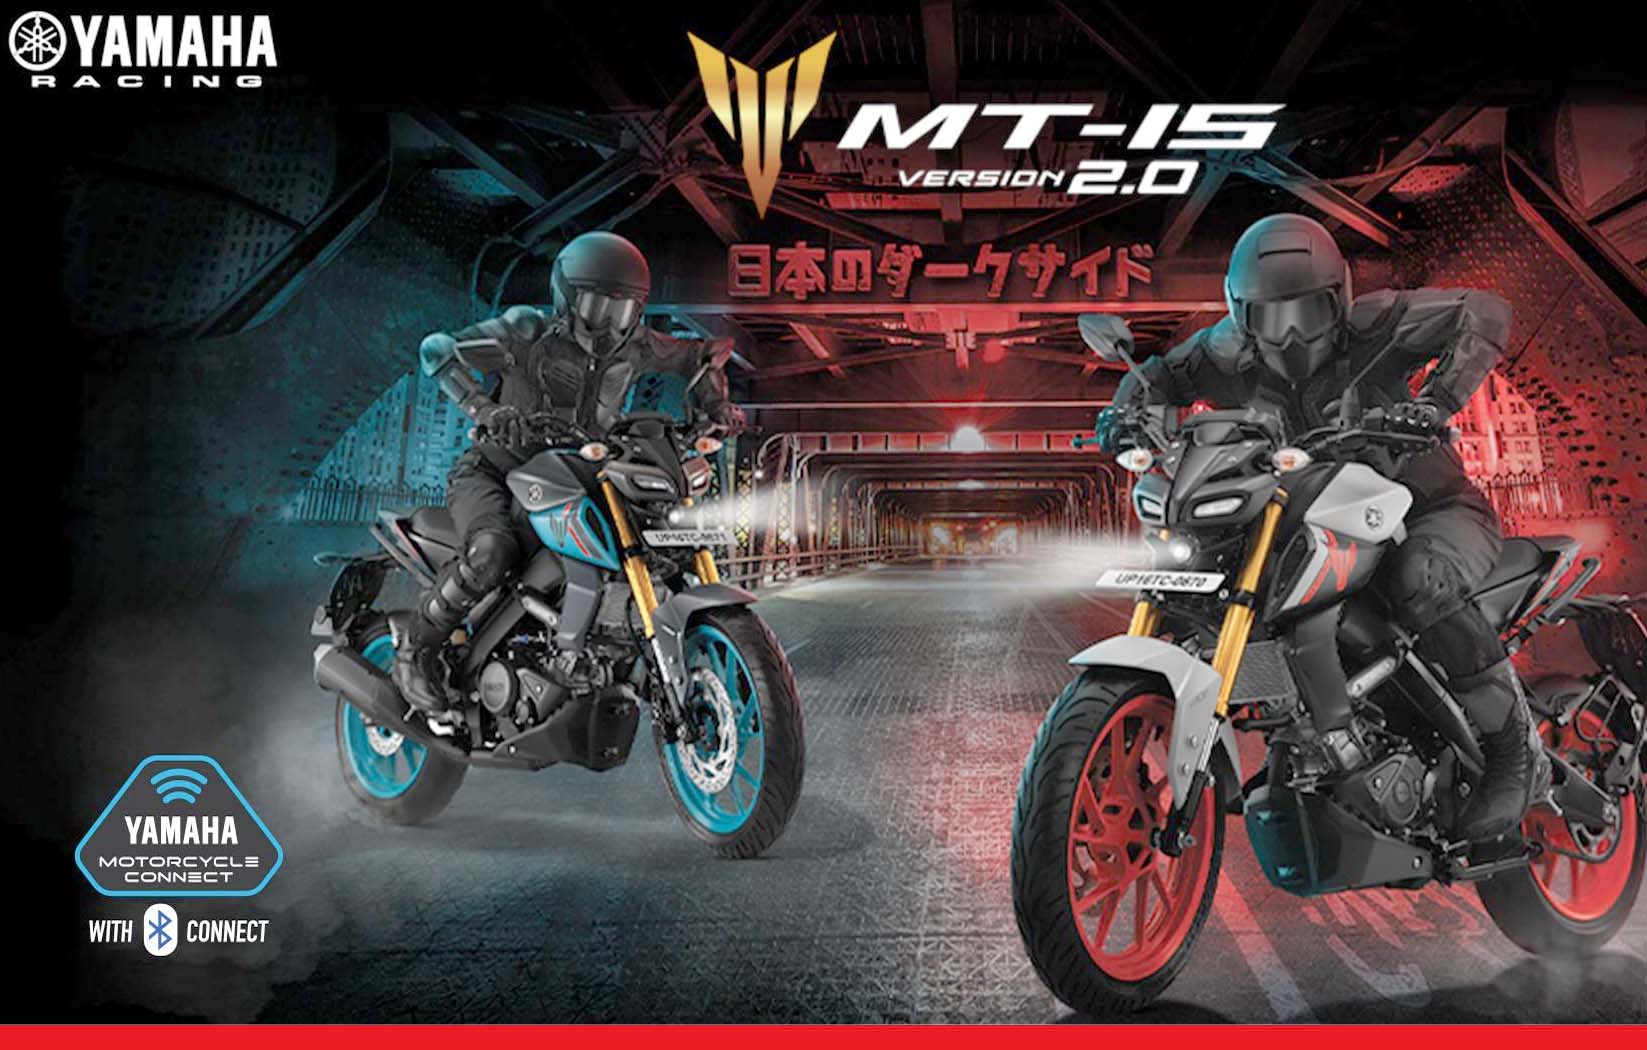 यामाहा MT15 का अपग्रेड वर्जन लॉन्च, 1.6 लाख में खरीदें बाइक